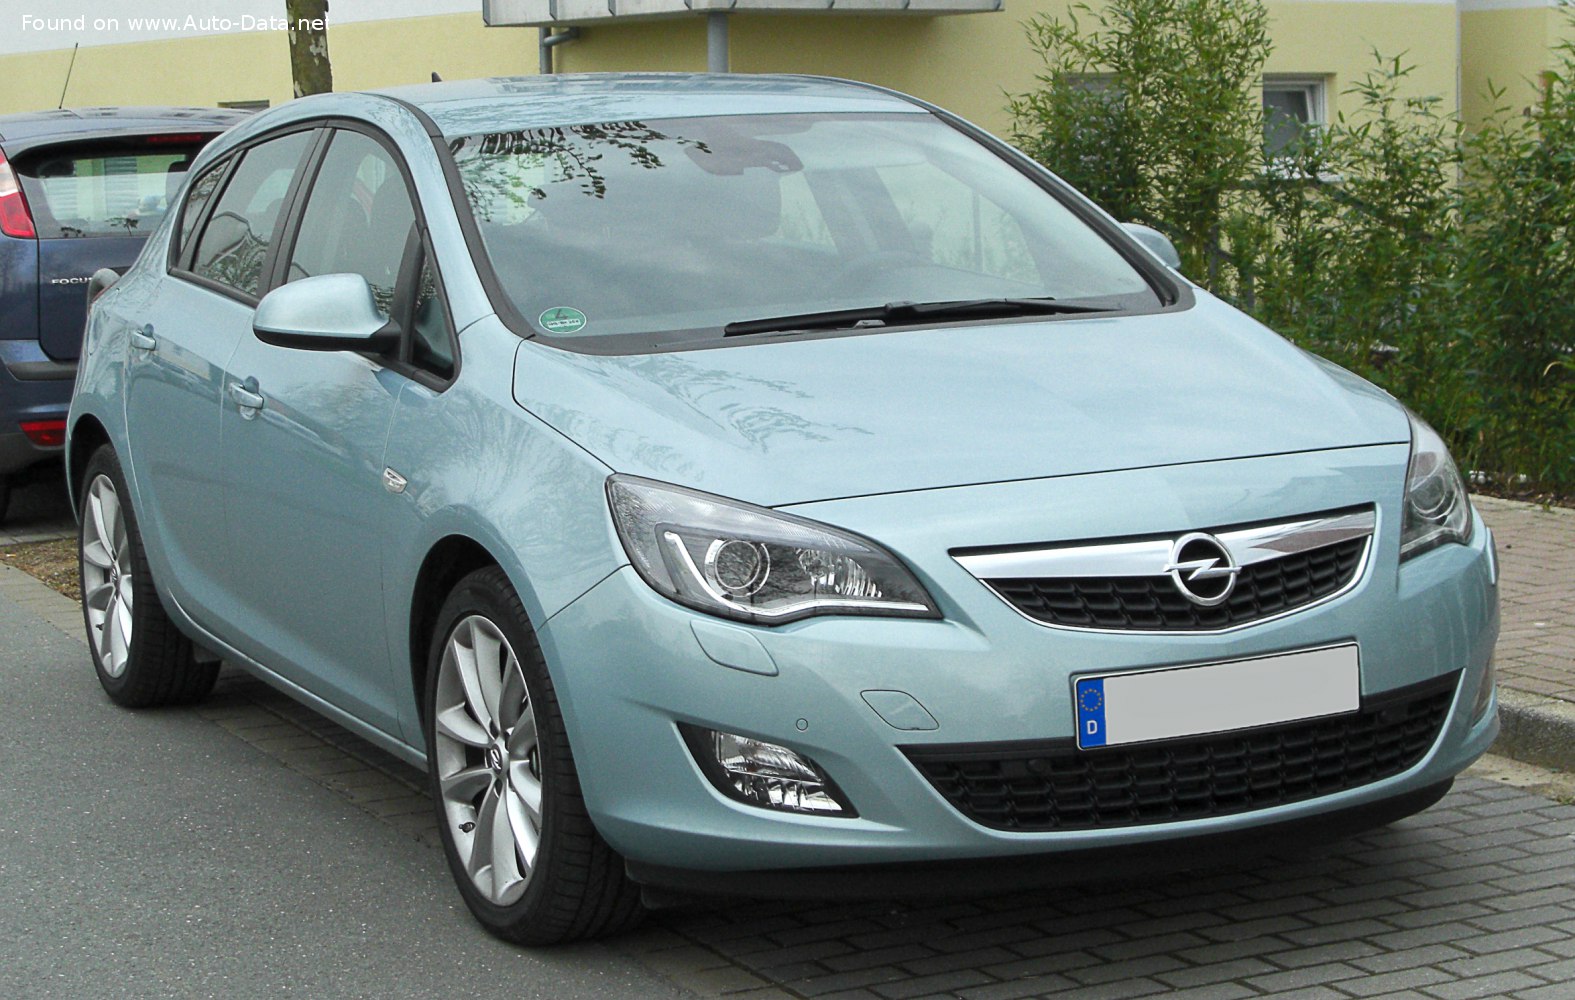 2009 Opel Astra J 1.7 CDTI (110 CV)  Scheda Tecnica e consumi , Dimensioni